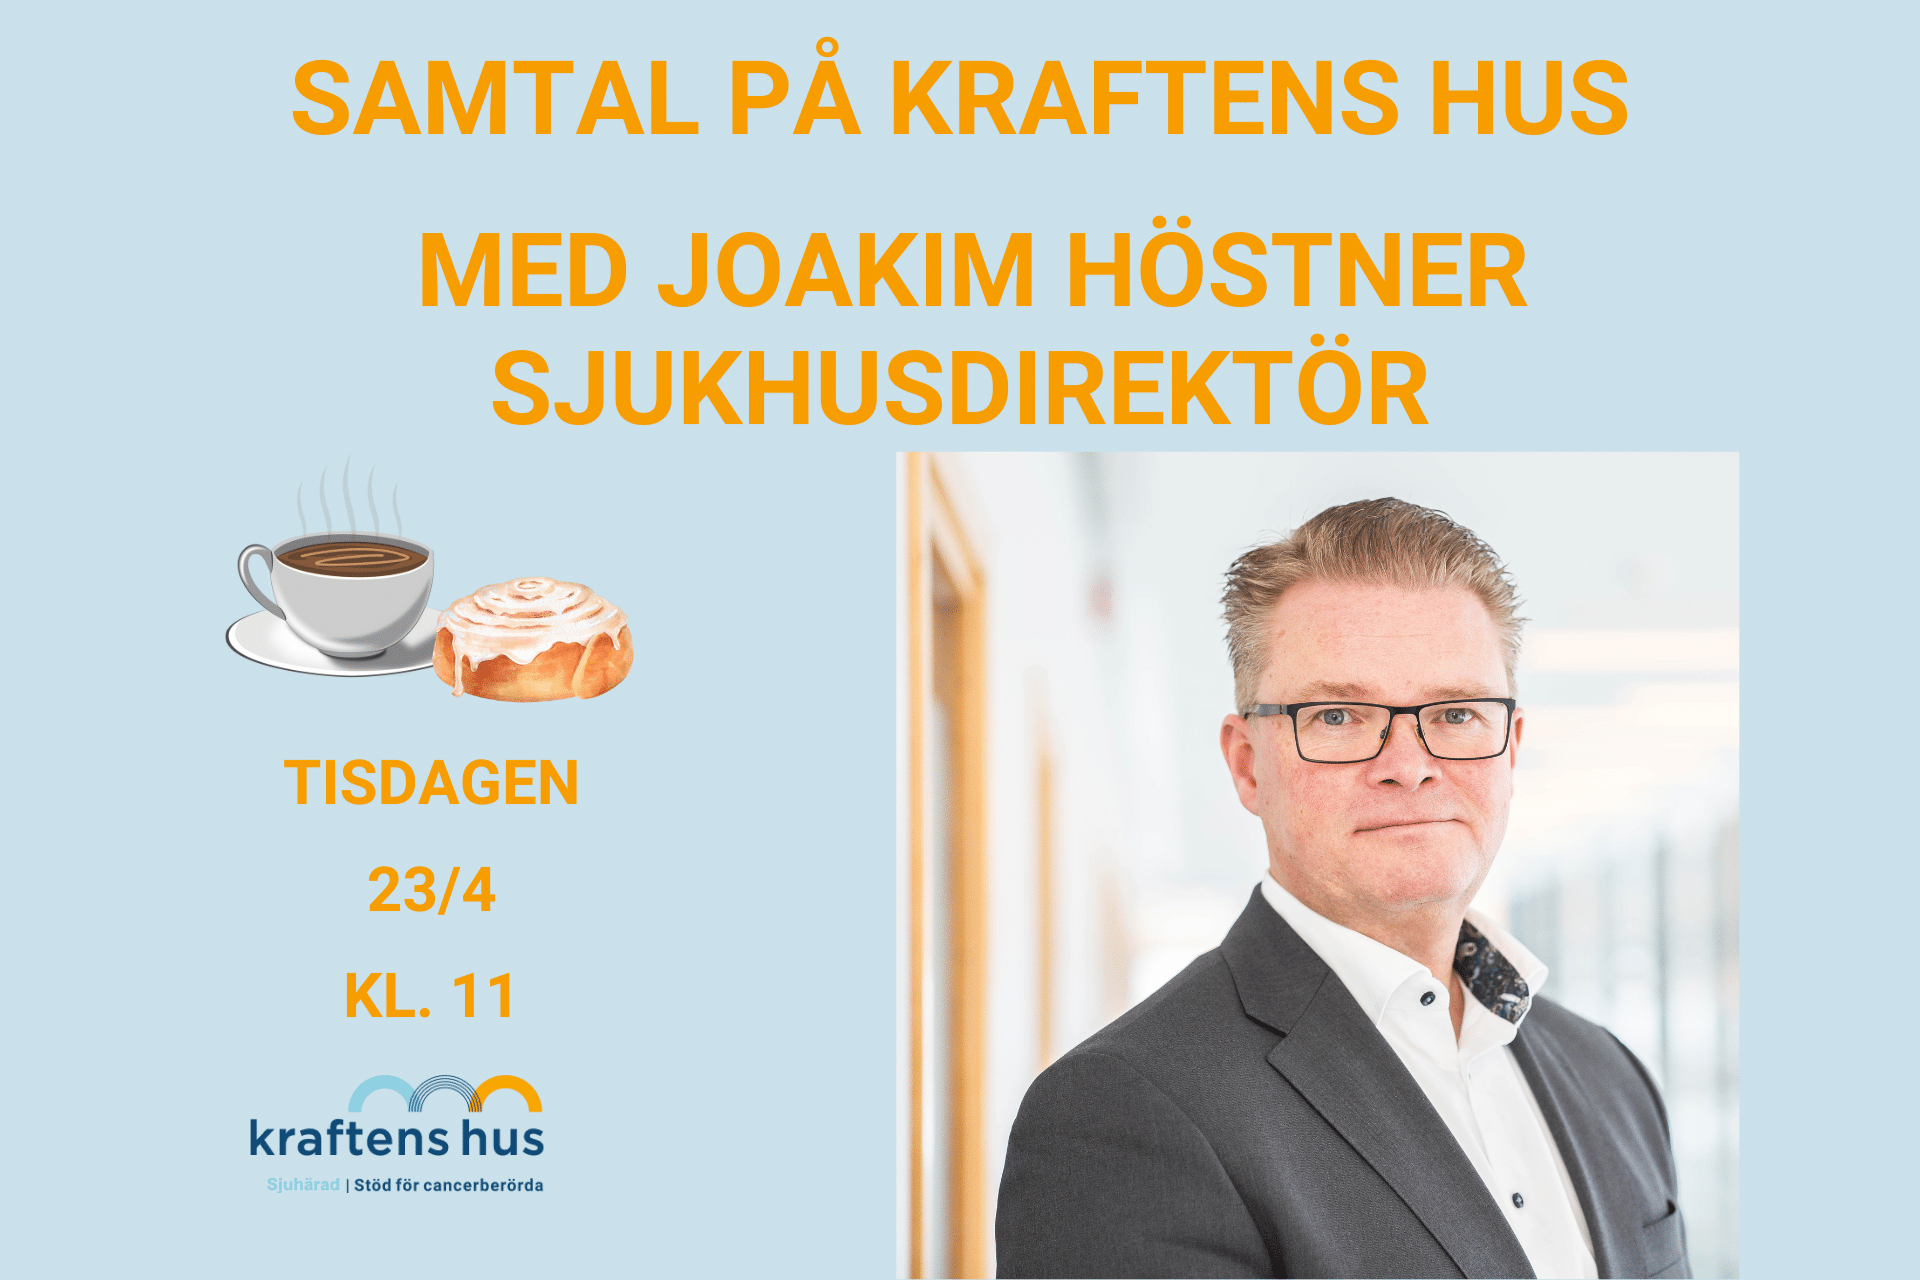 Samtal på Kraftens hus Sjuhärad med Joakim Höstner sjukhusdirektör